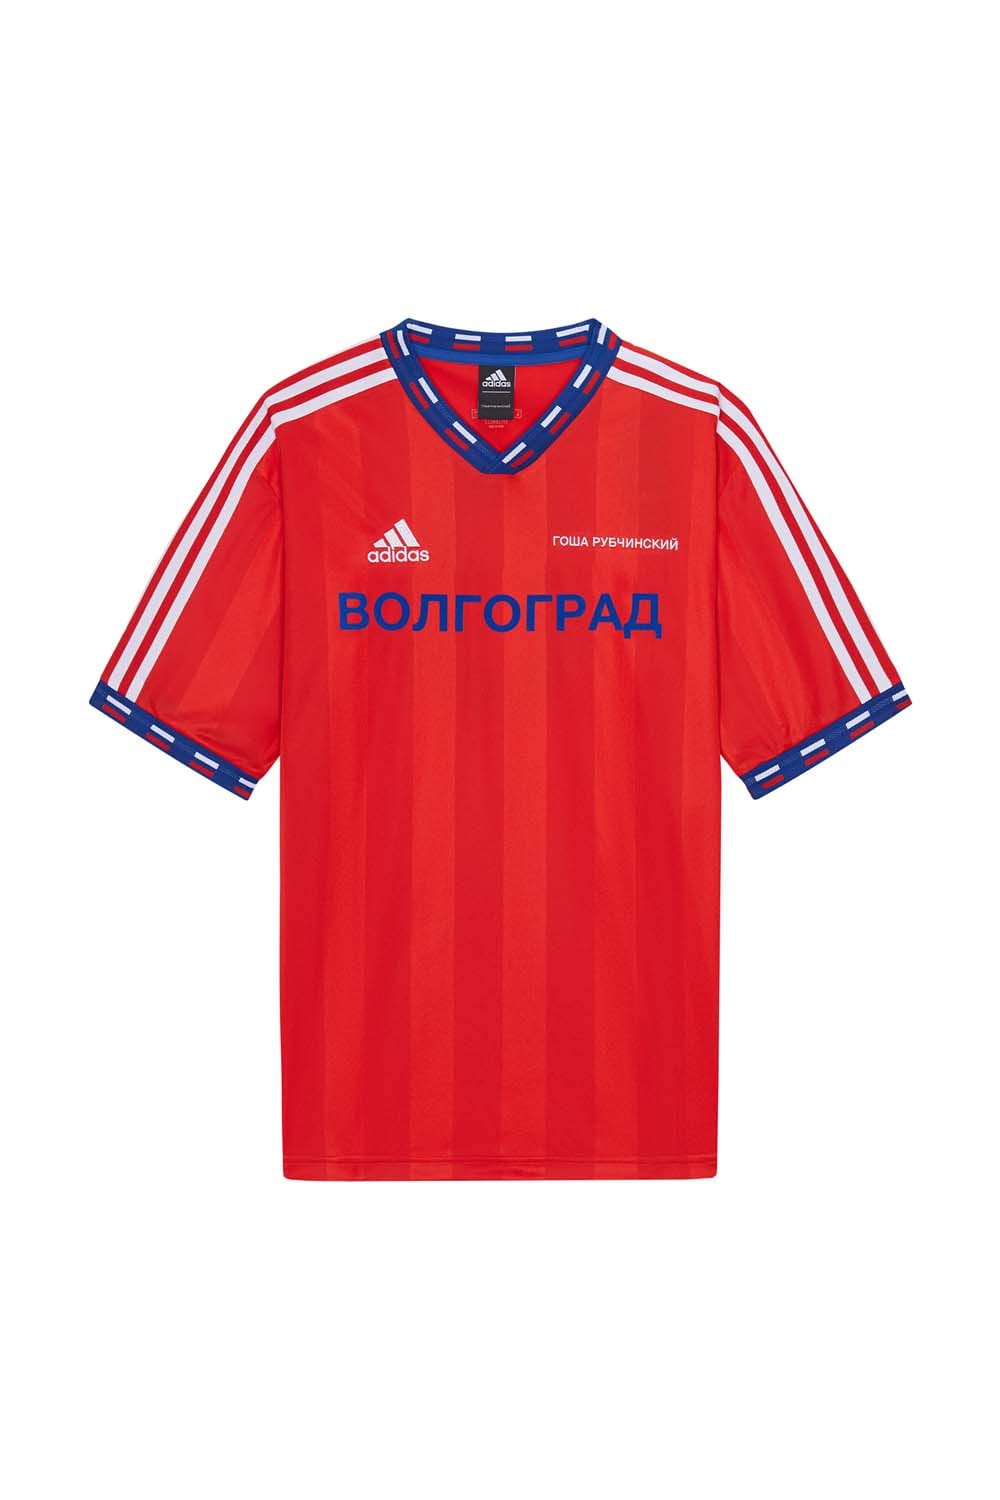 gosha rubchinskiy soccer jersey